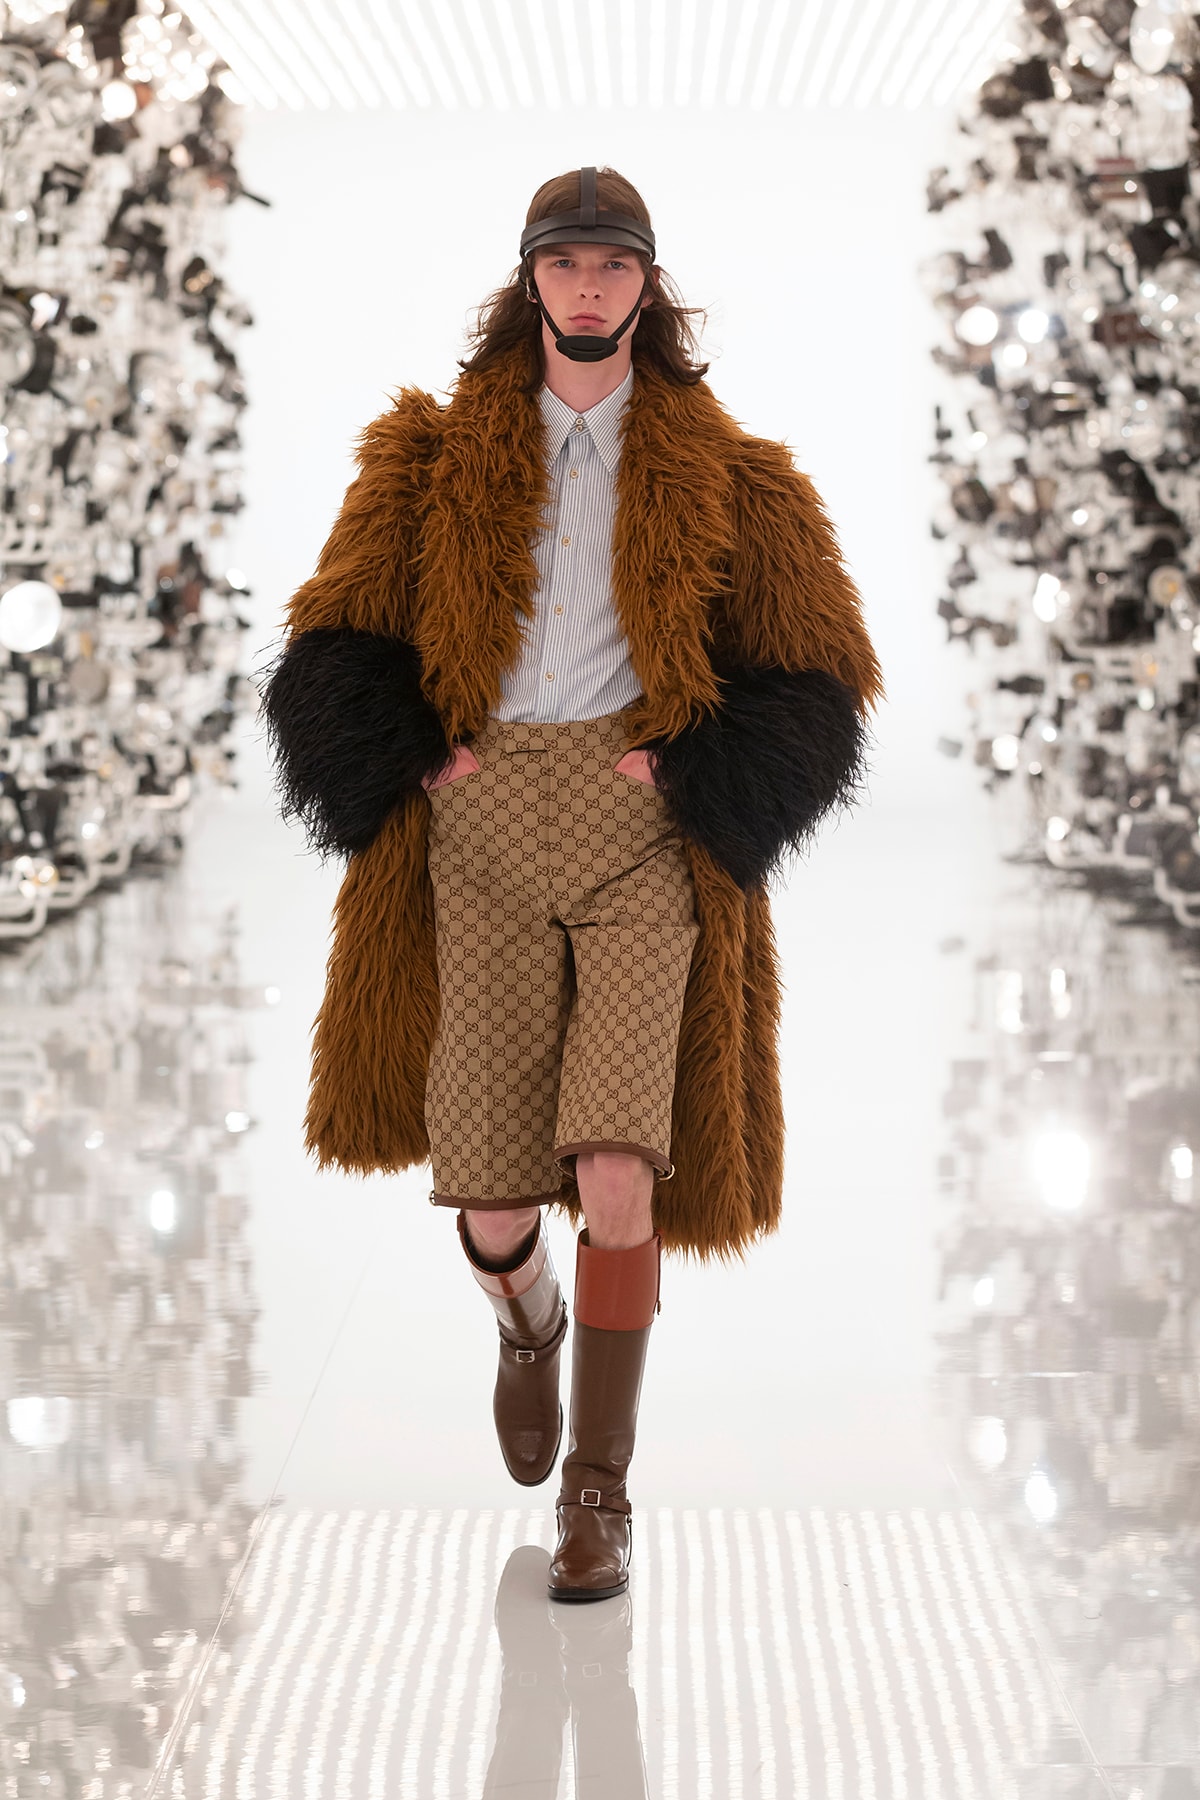 Gucci Fall/Winter 2021 "Aria" Collection Balenciaga Collaboration